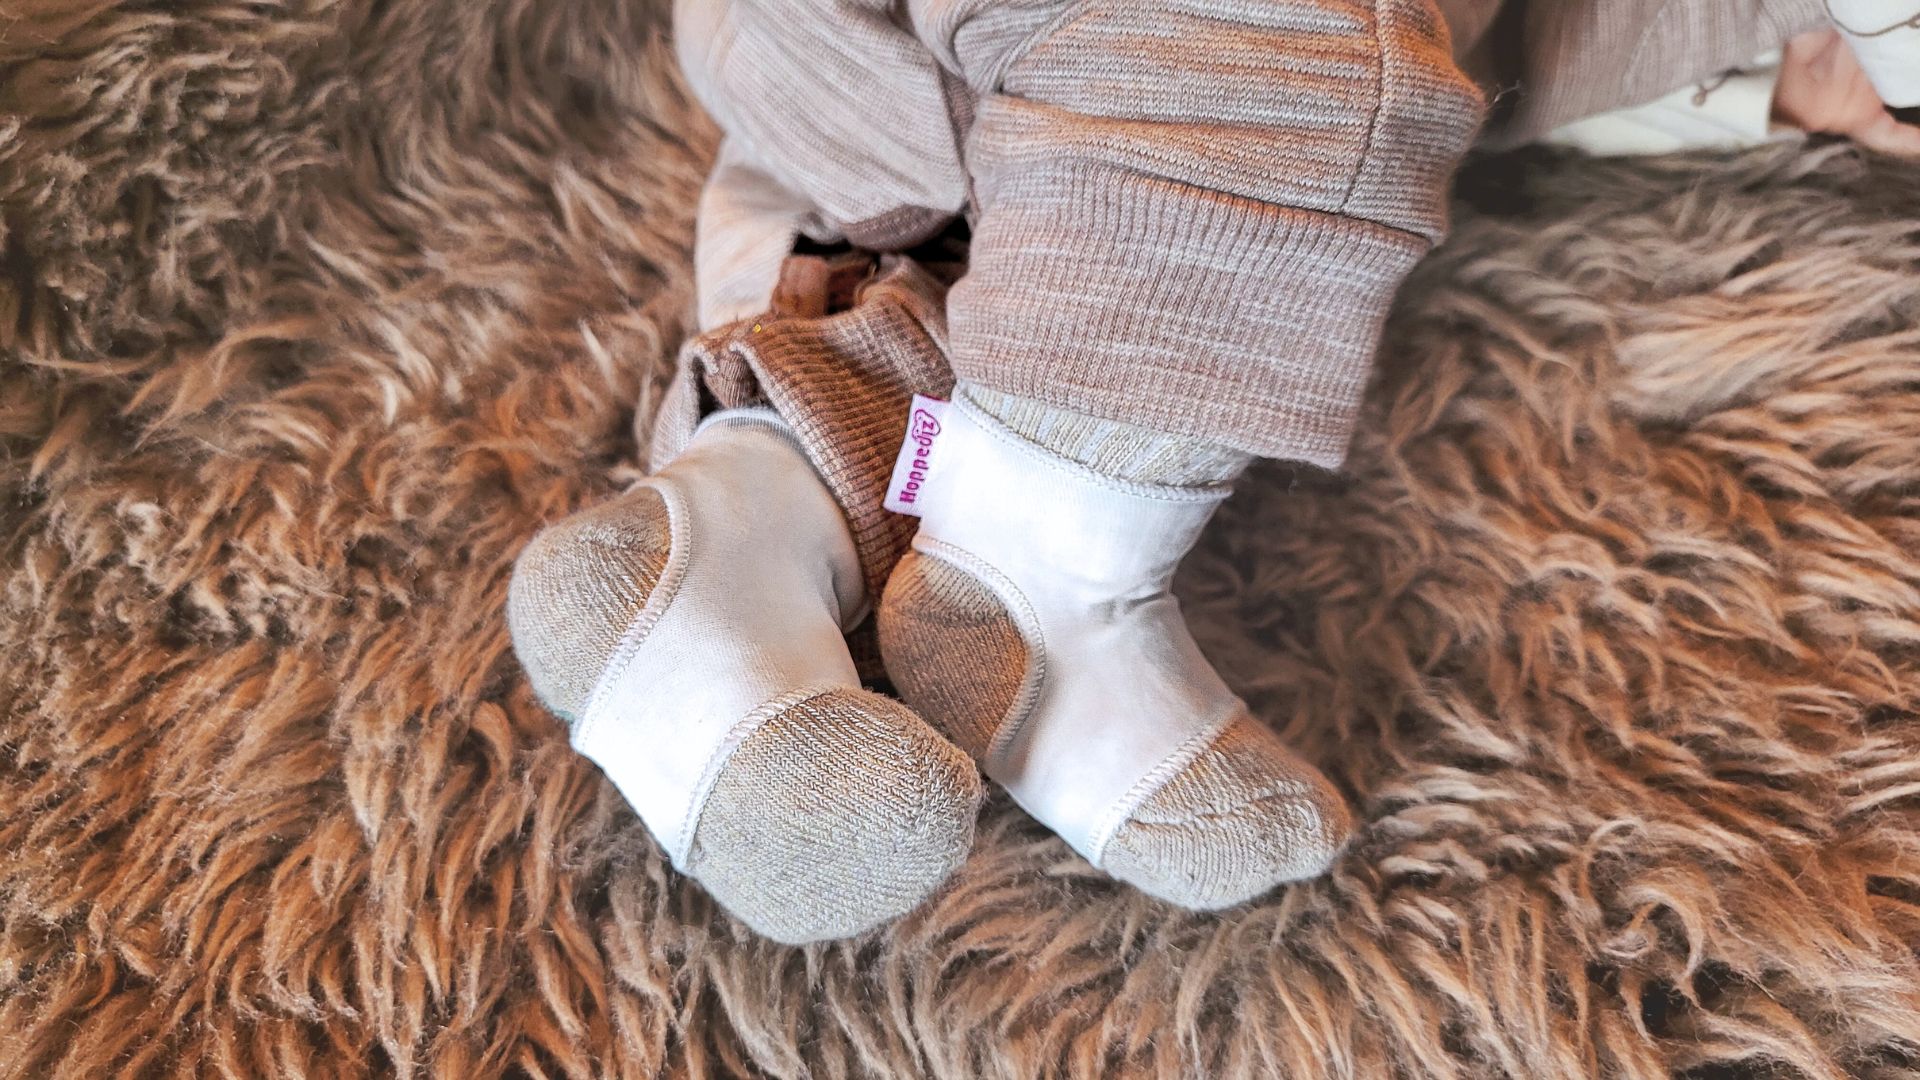 Sock holder for baby socks